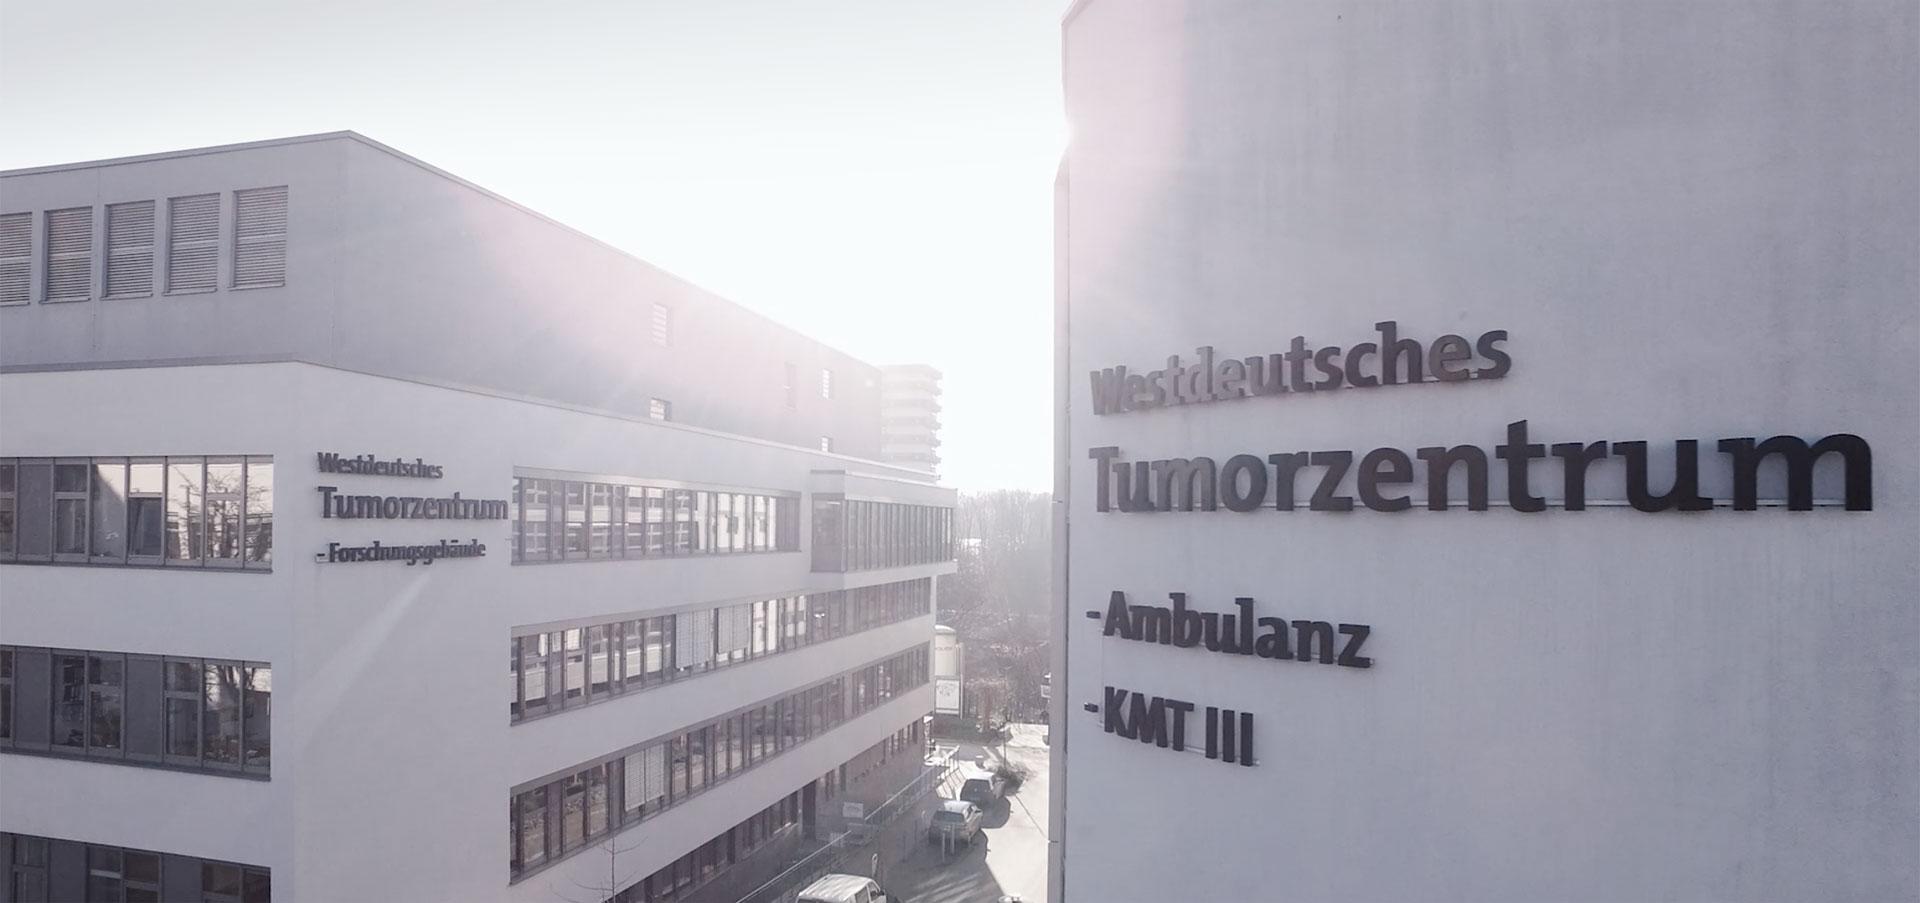 Westdeutsches Tumorzentrum